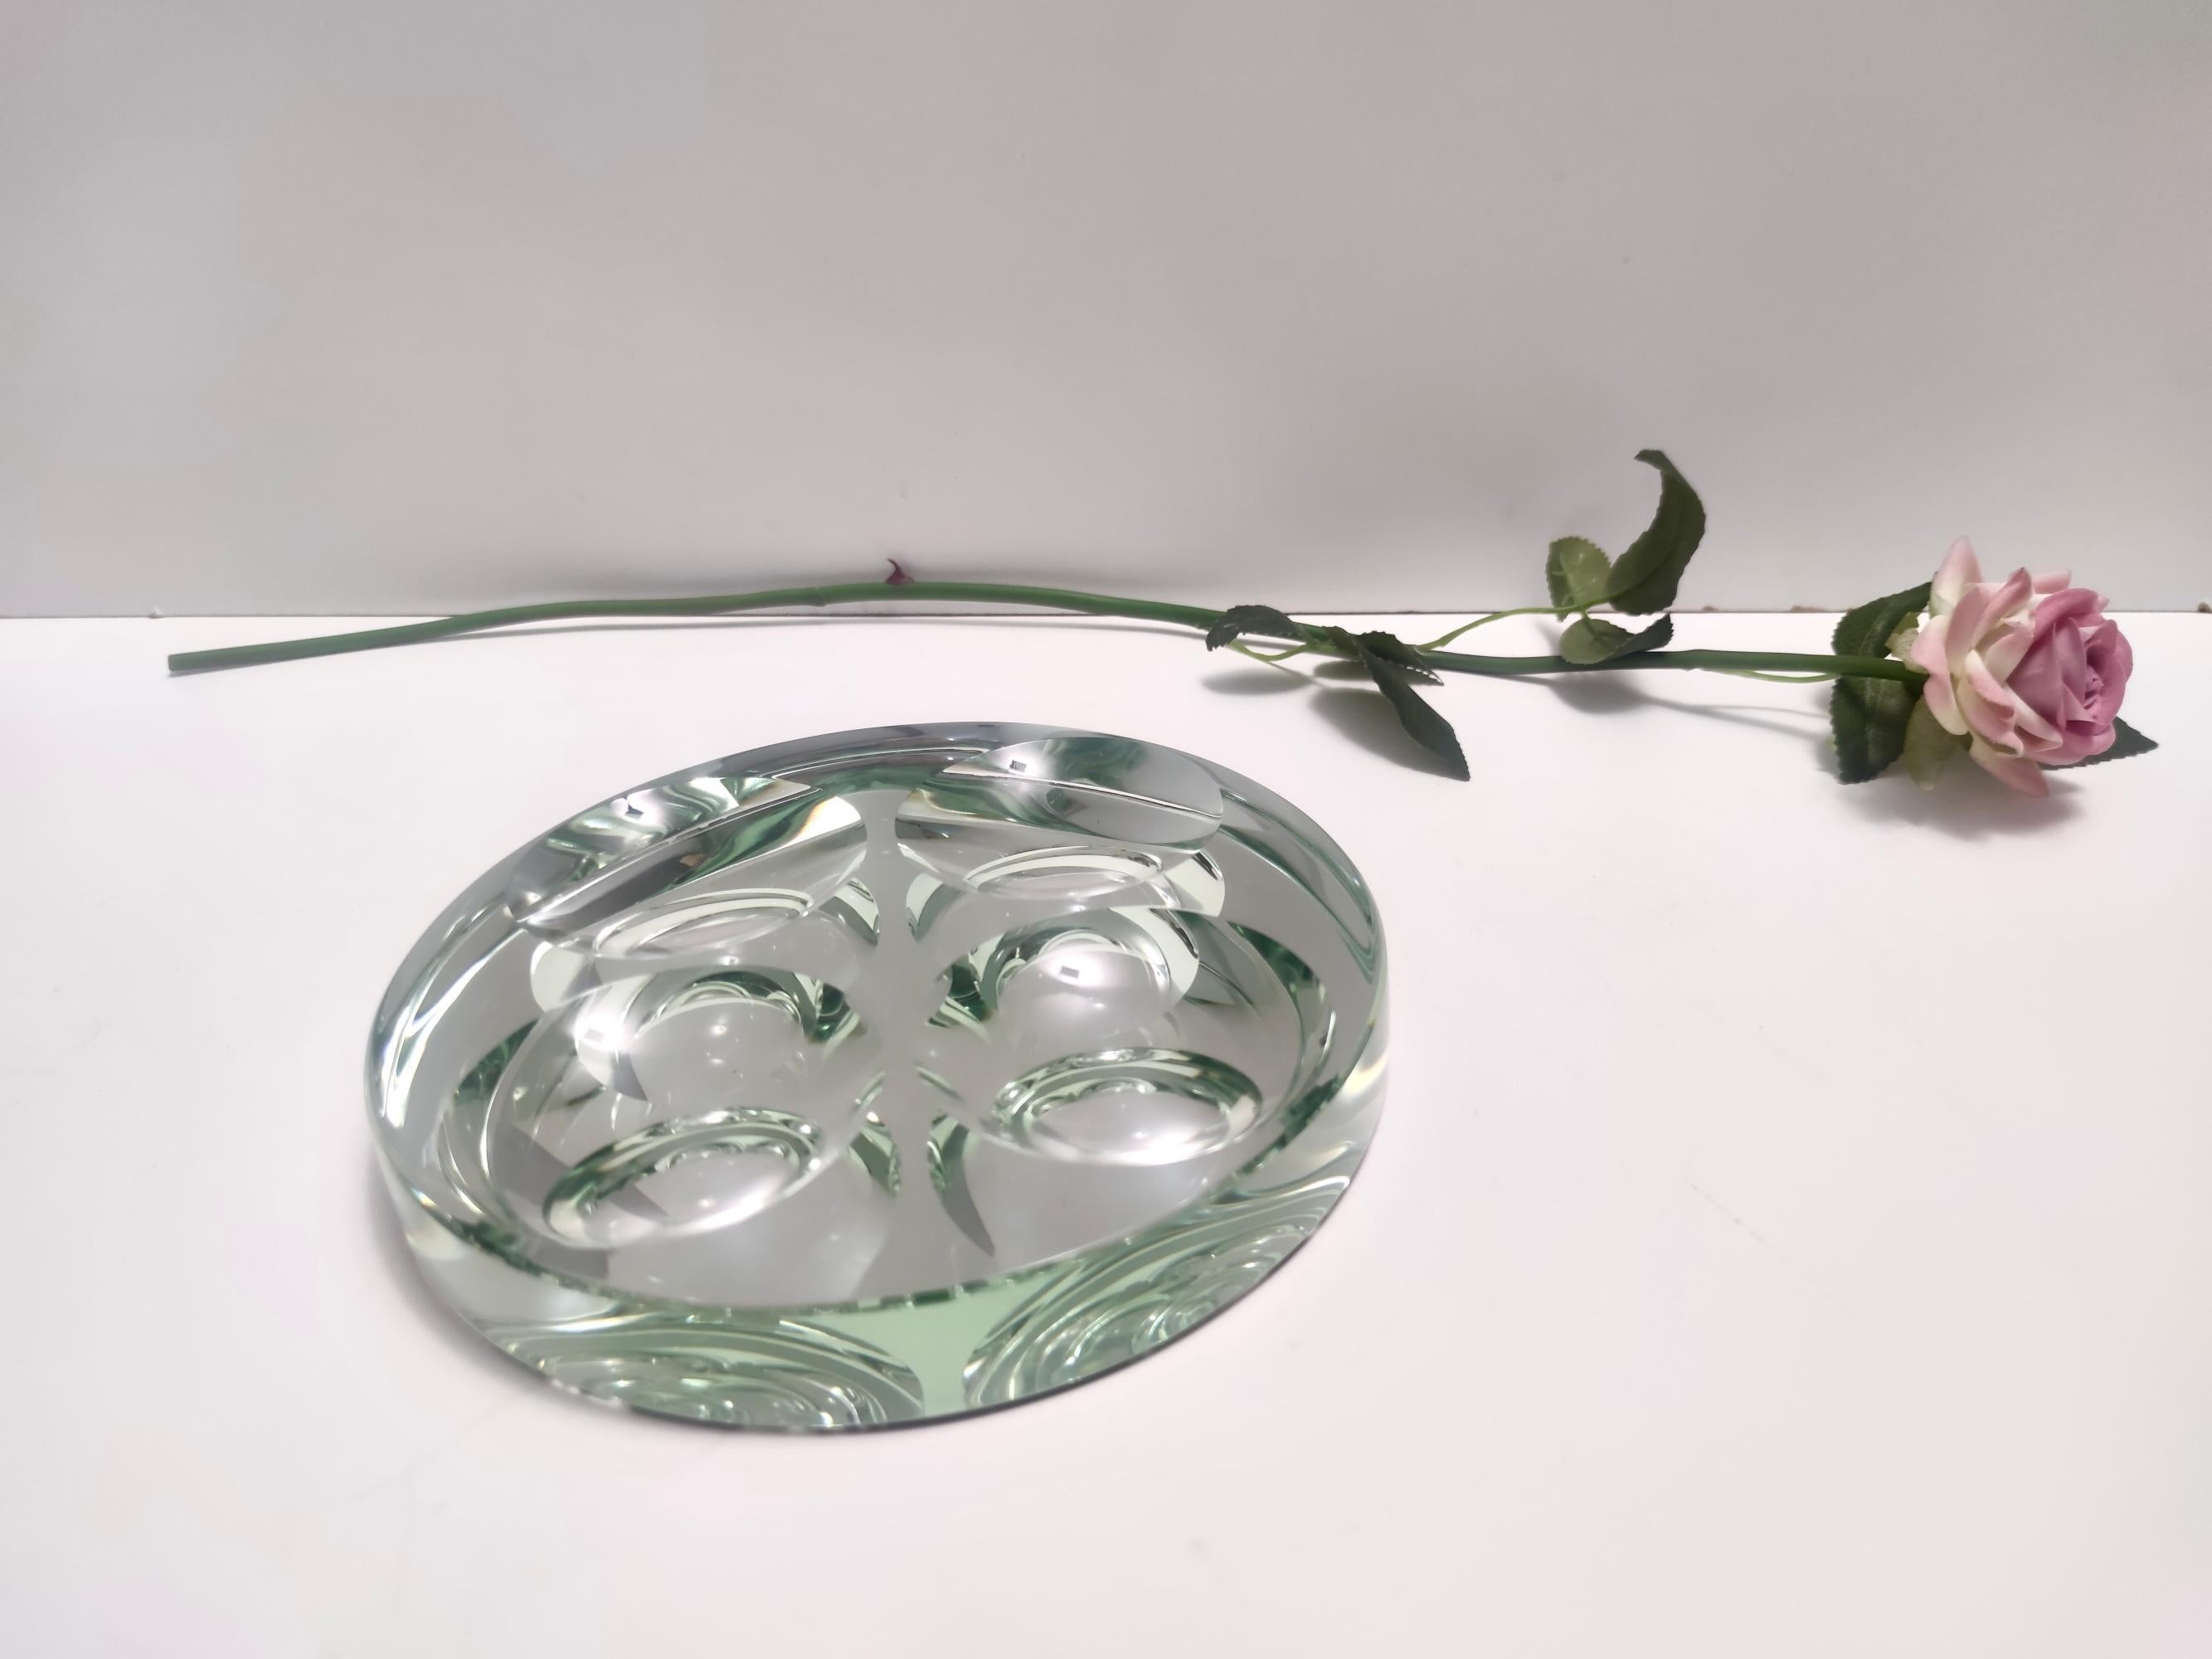 Fabriqué en Italie, années 1950. 
Ce vide-poche / cendrier est réalisé en verre dépoli vert du Nil de 3 cm d'épaisseur. 
Il s'agit d'une pièce vintage, qui peut donc présenter de légères traces d'utilisation, mais qui peut être considérée comme